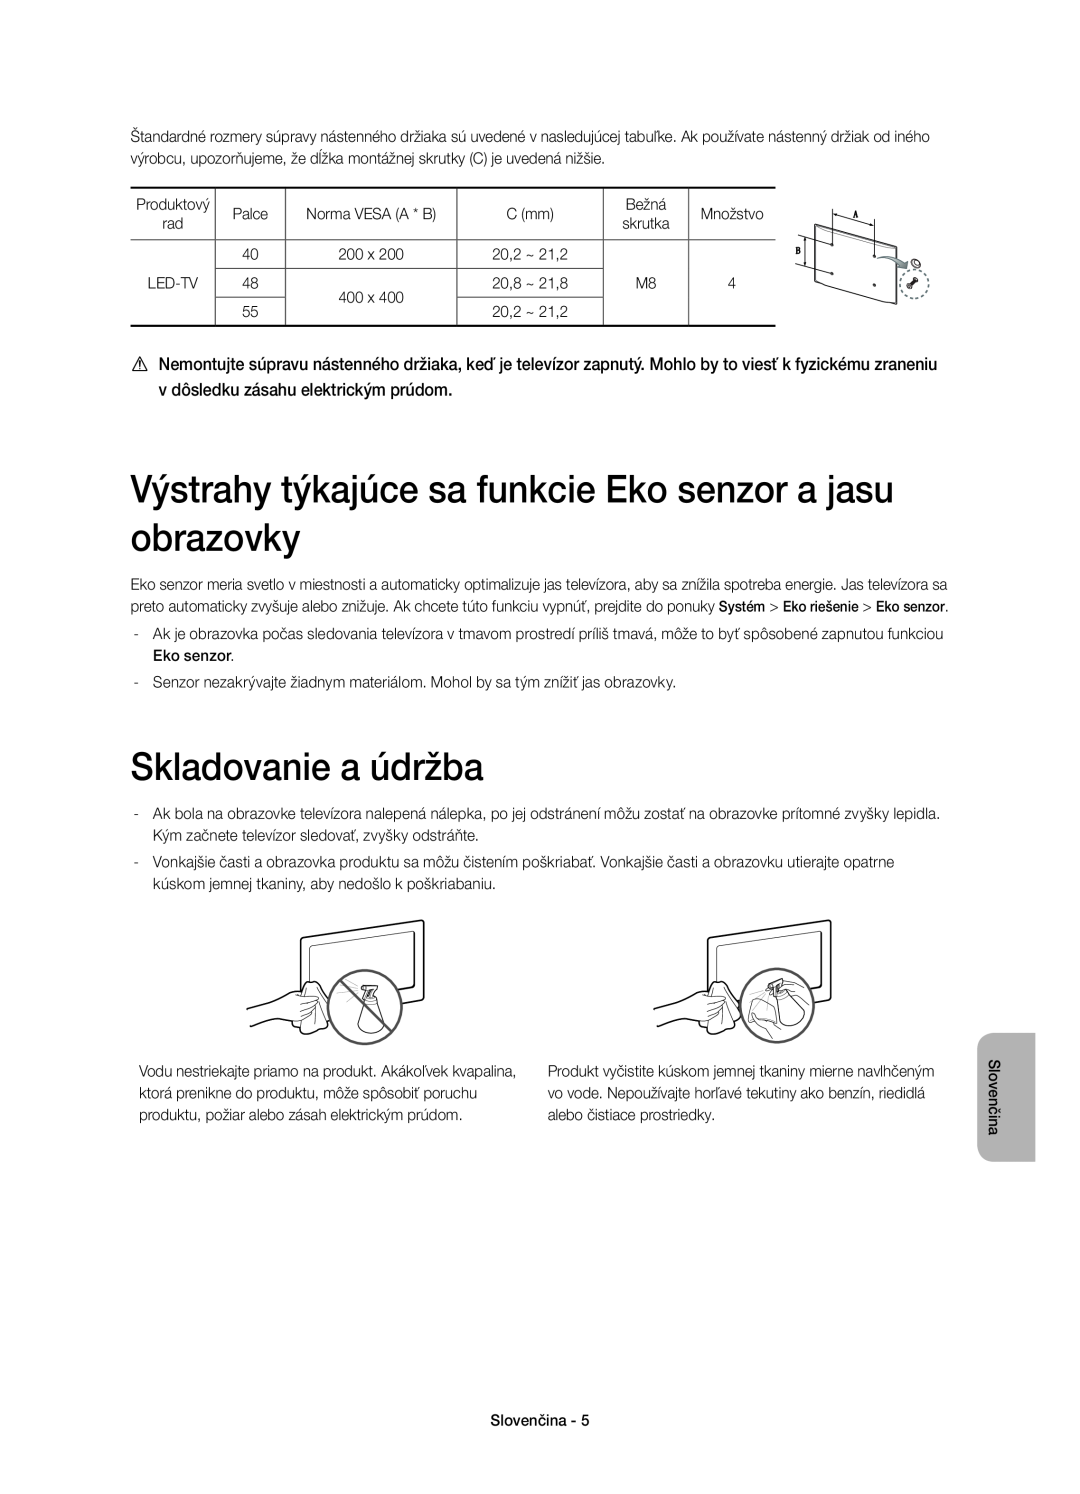 Samsung UE48H6650SLXZF, UE55H6700SLXXH manual Výstrahy týkajúce sa funkcie Eko senzor a jasu obrazovky, Skladovanie a údržba 